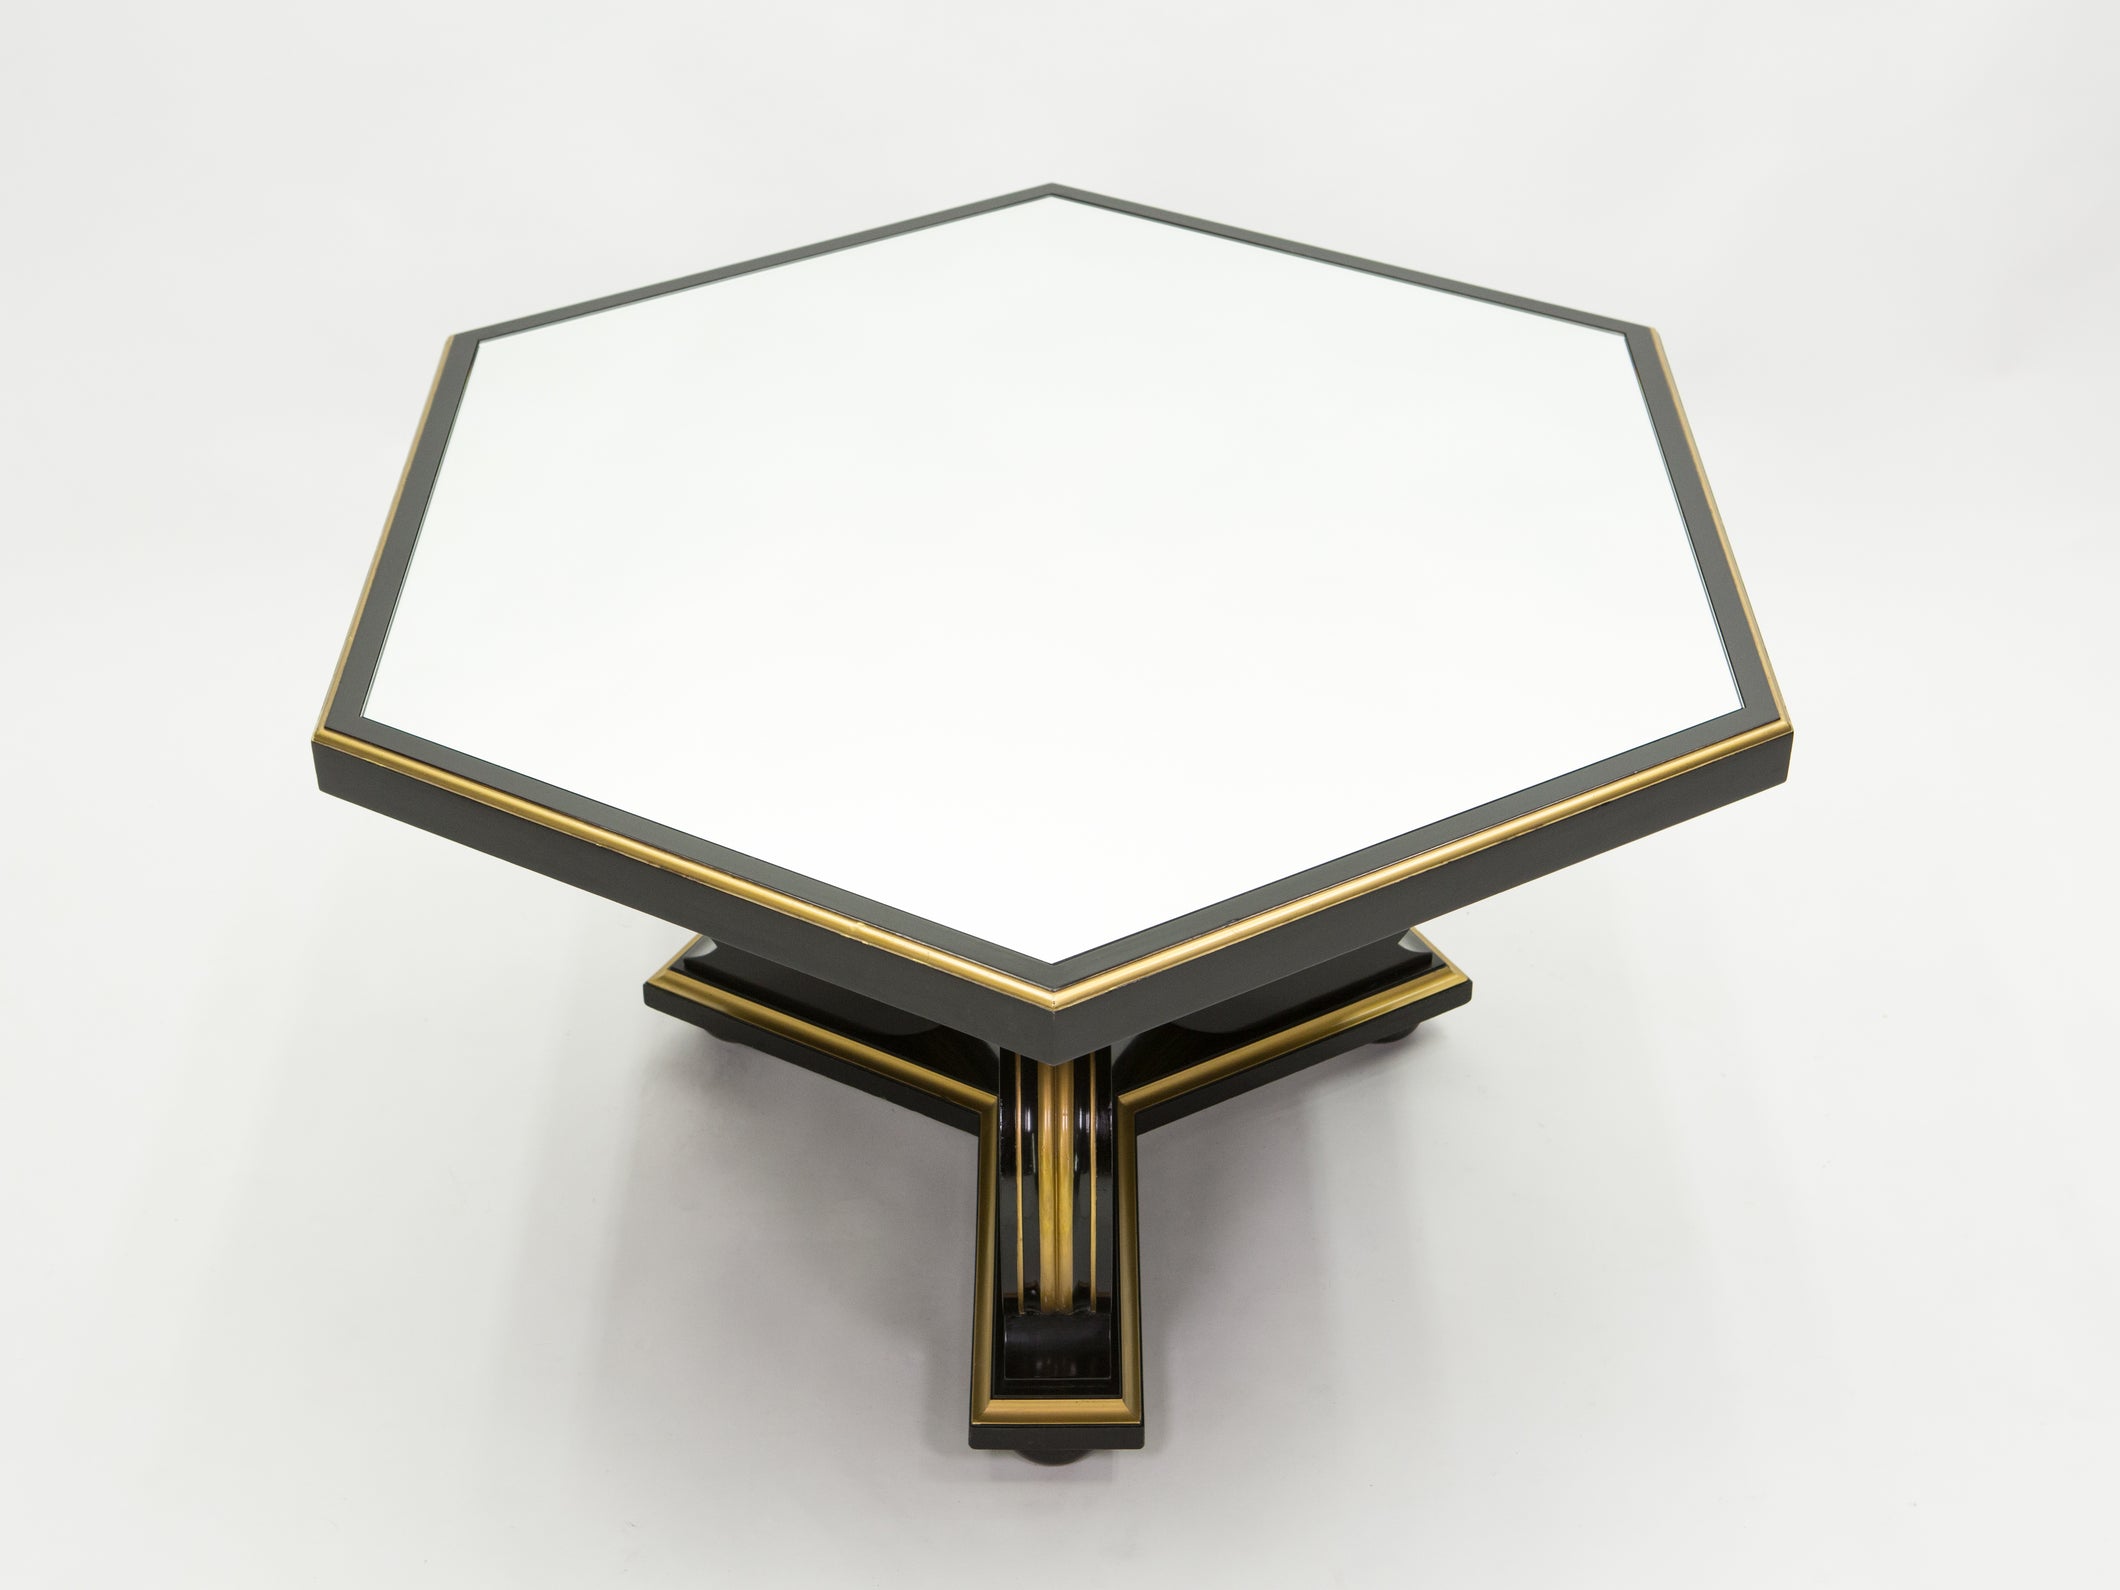 Table à manger néoclassique Maurice Hirsch bois noir doré miroir 1970